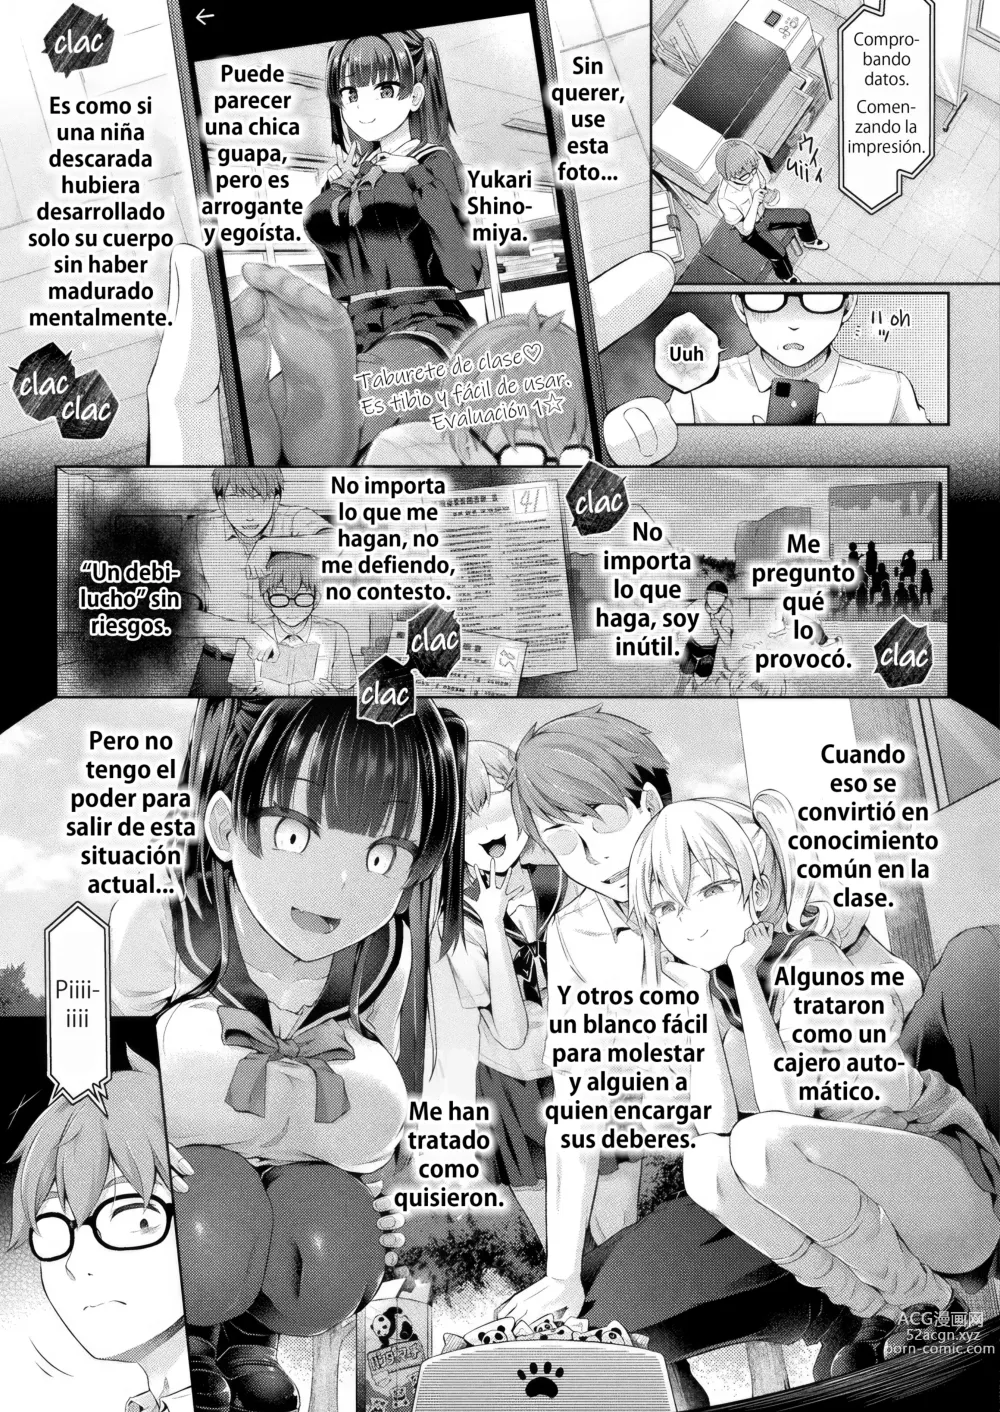 Page 3 of manga Doppelganger después de clases cap. 1